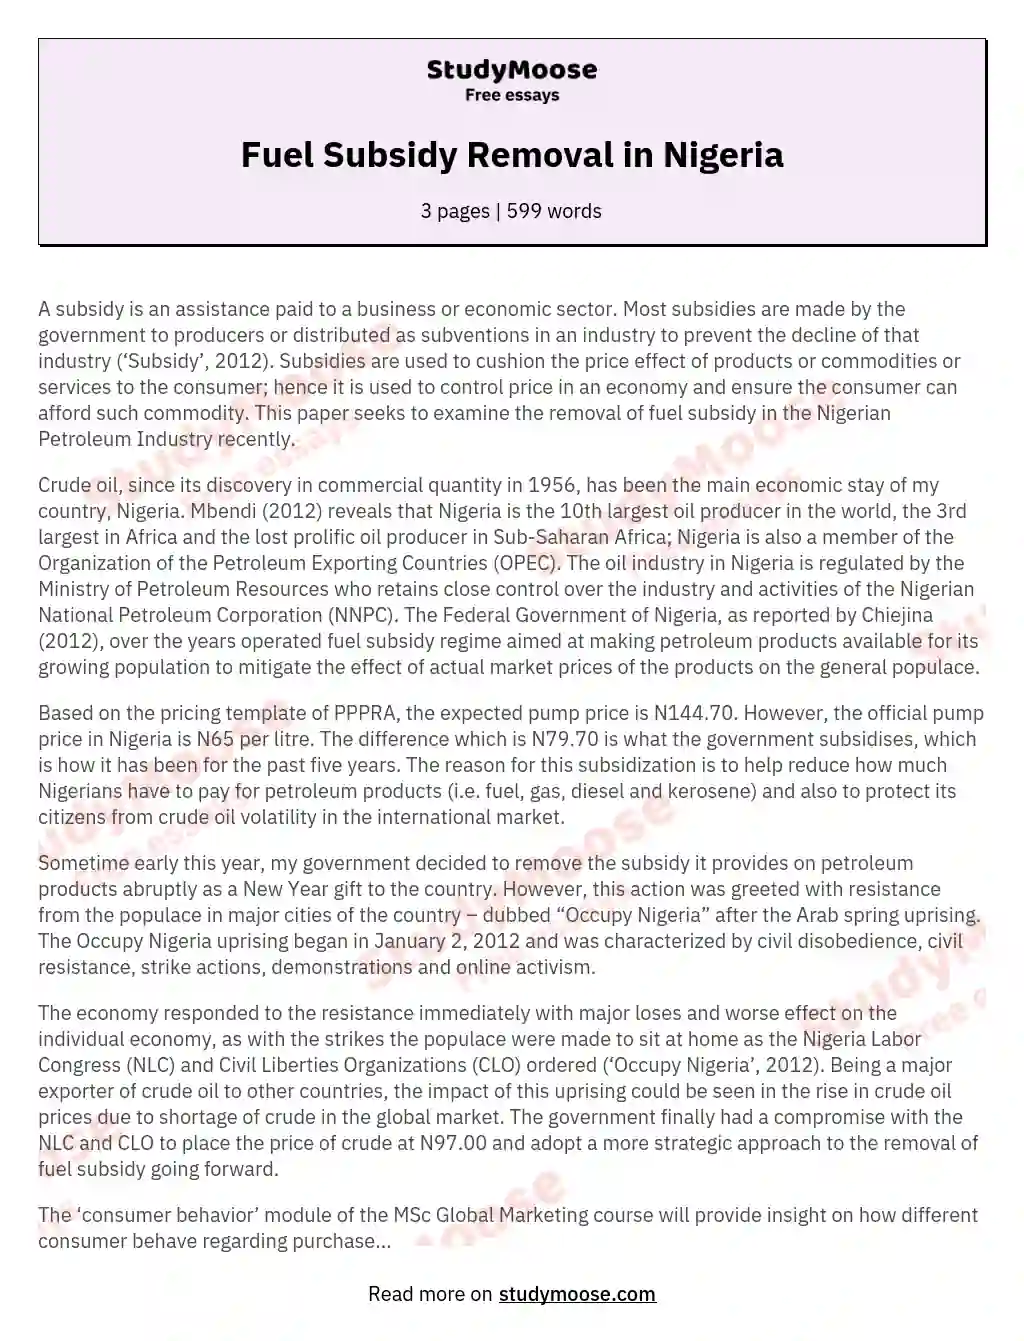 write an essay on fuel scarcity in nigeria pdf